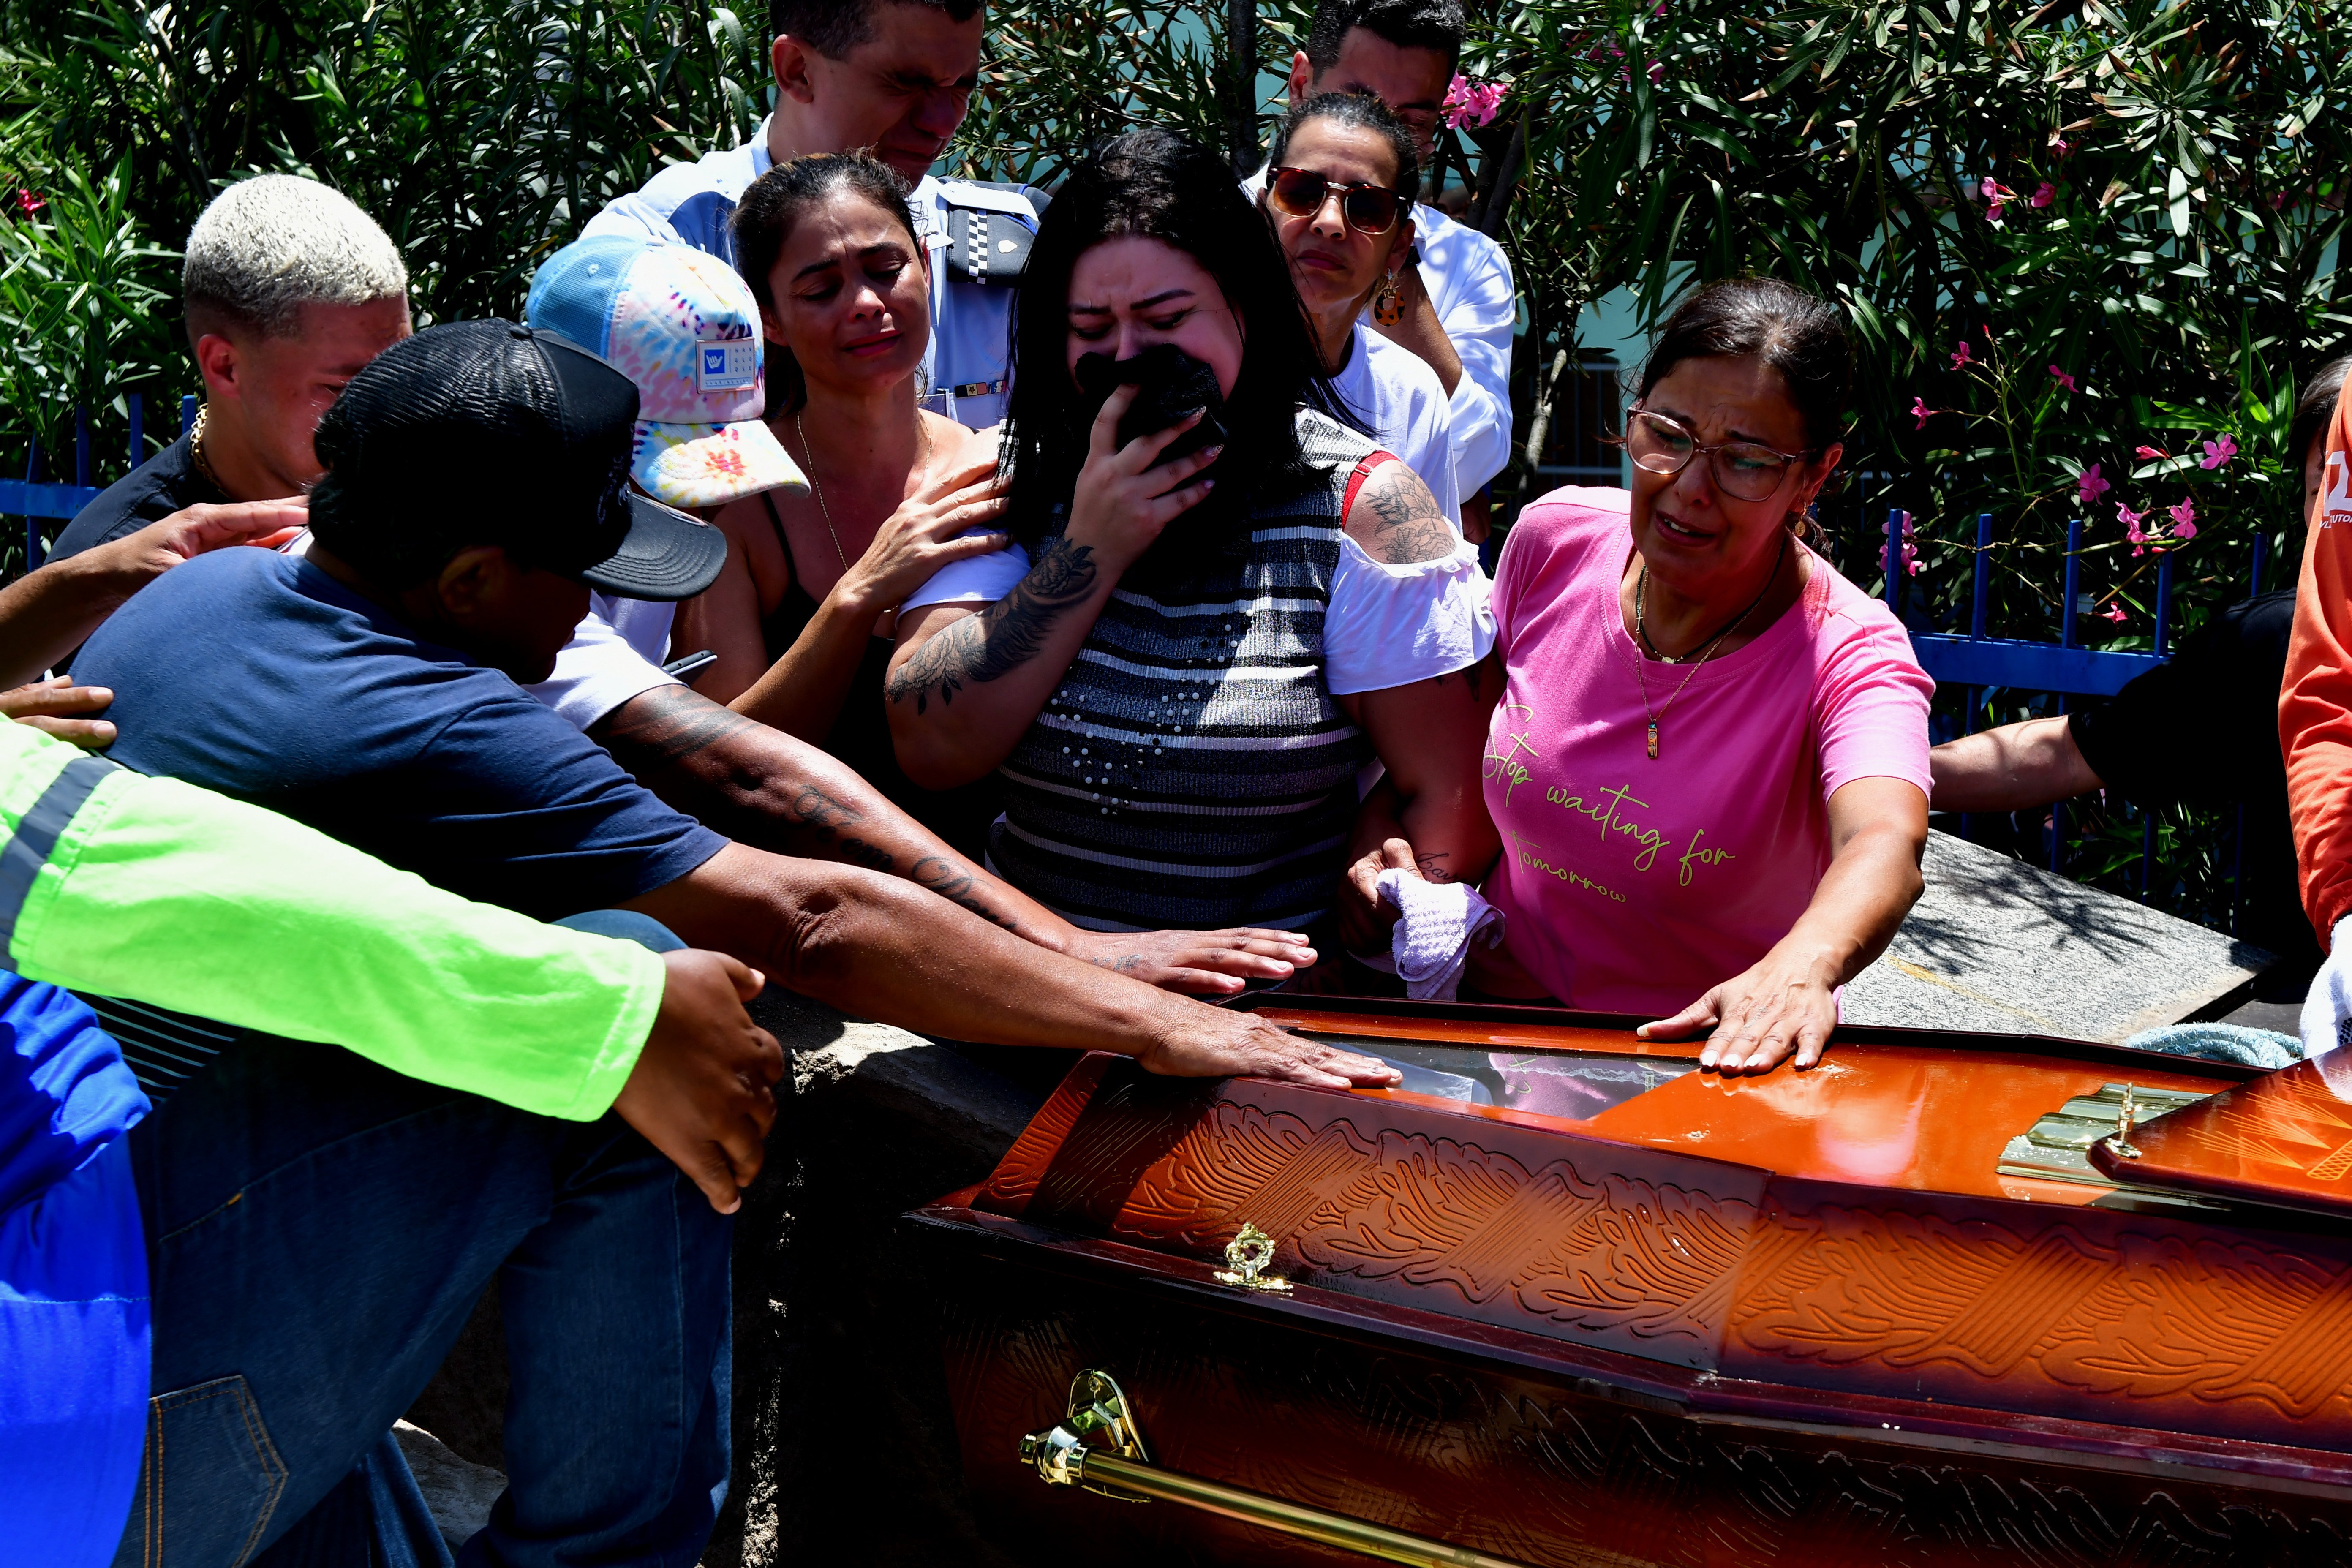 Sepultamento do soldado da polícia militar no cemitério São Pedro, bairro Santo André, em Cariacica, Bruno Mayer Ferrani, morto durante uma ocorrência, 